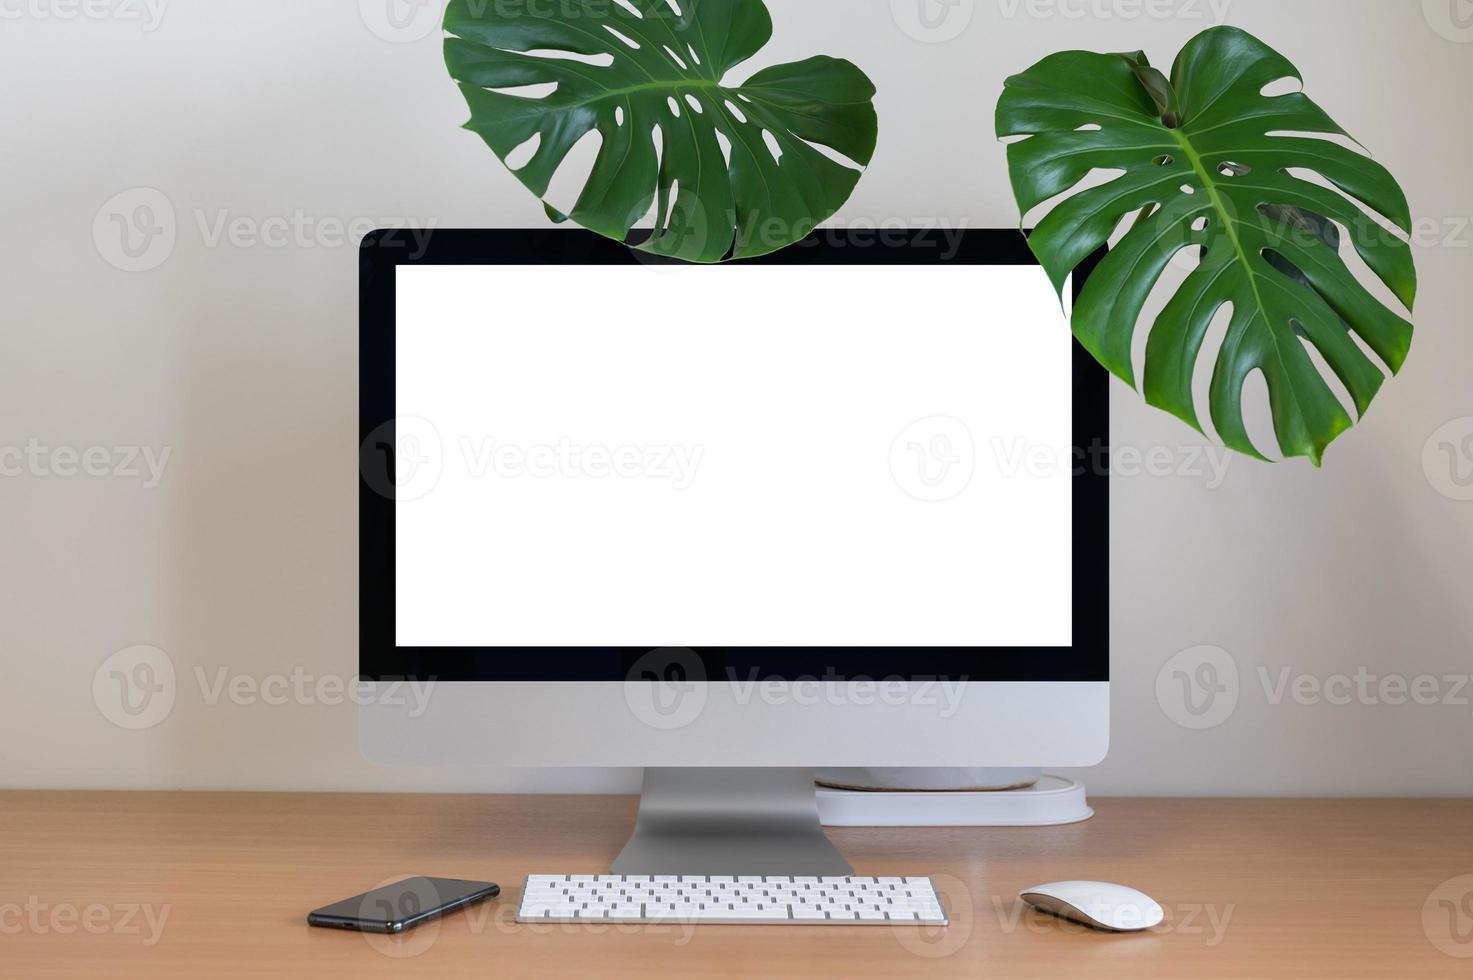 planta monstera y escritorio en dek minimalista foto